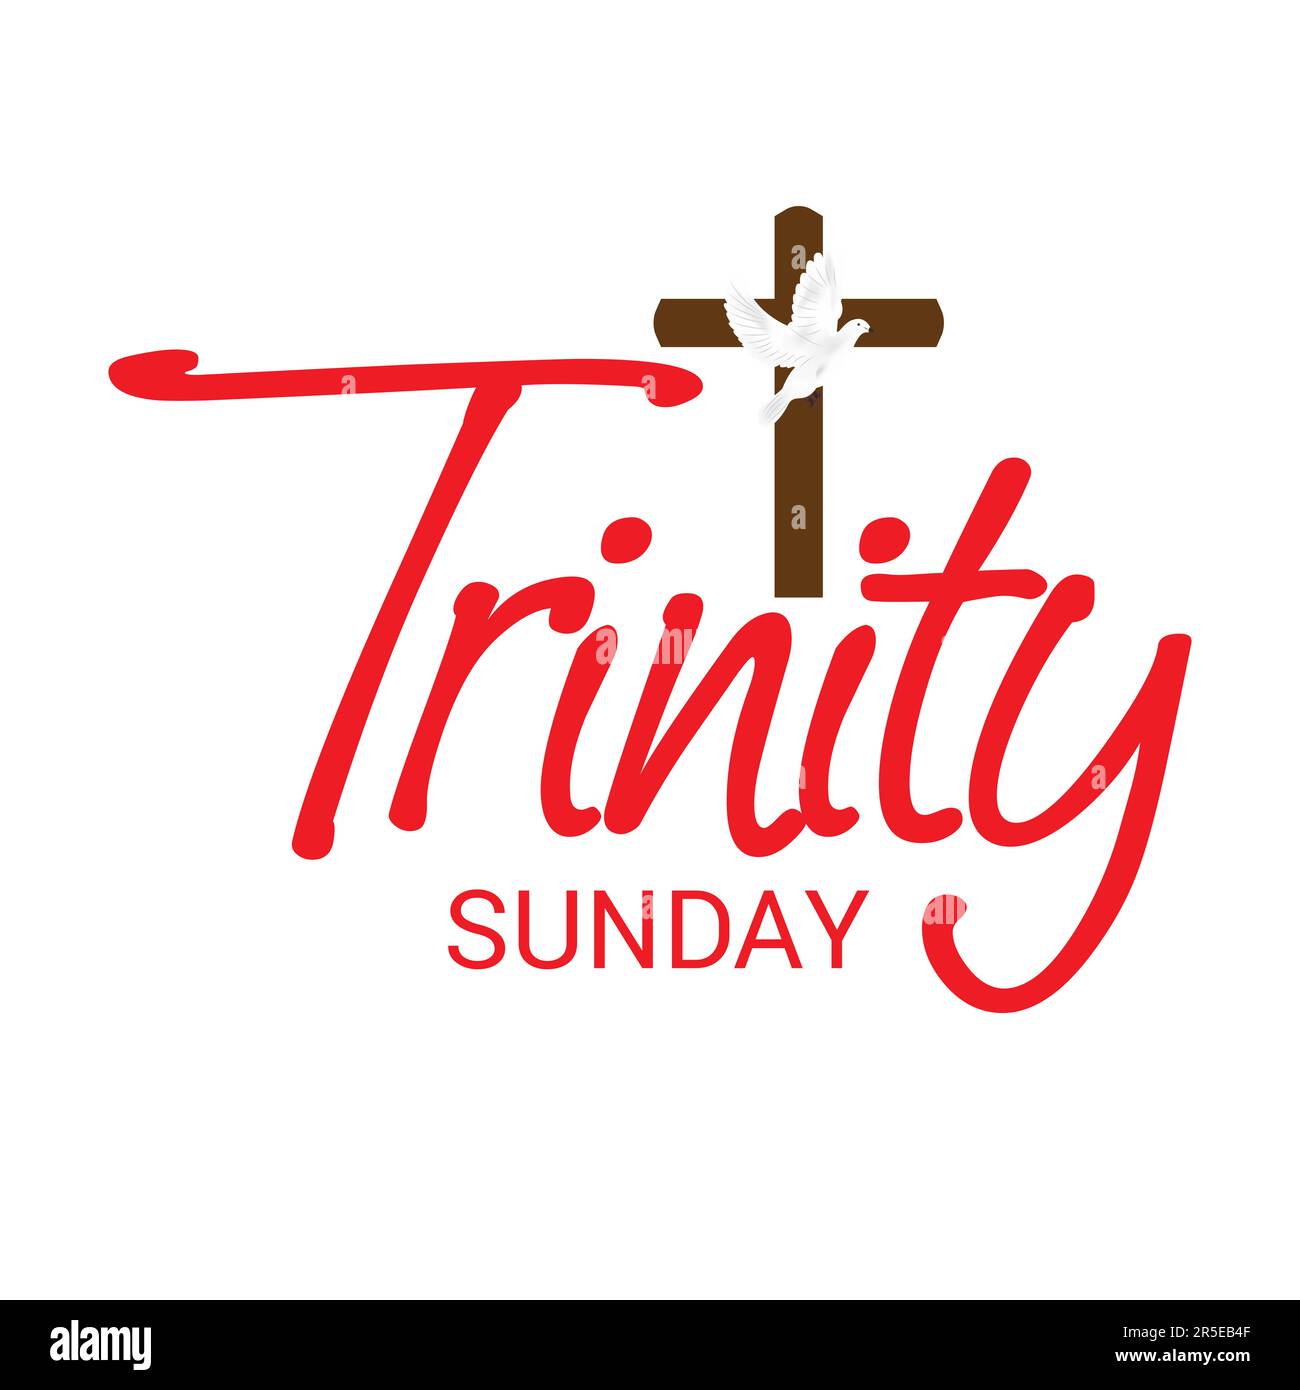 Illustration vectorielle d'un arrière-plan pour le dimanche de la Trinité. Banque D'Images